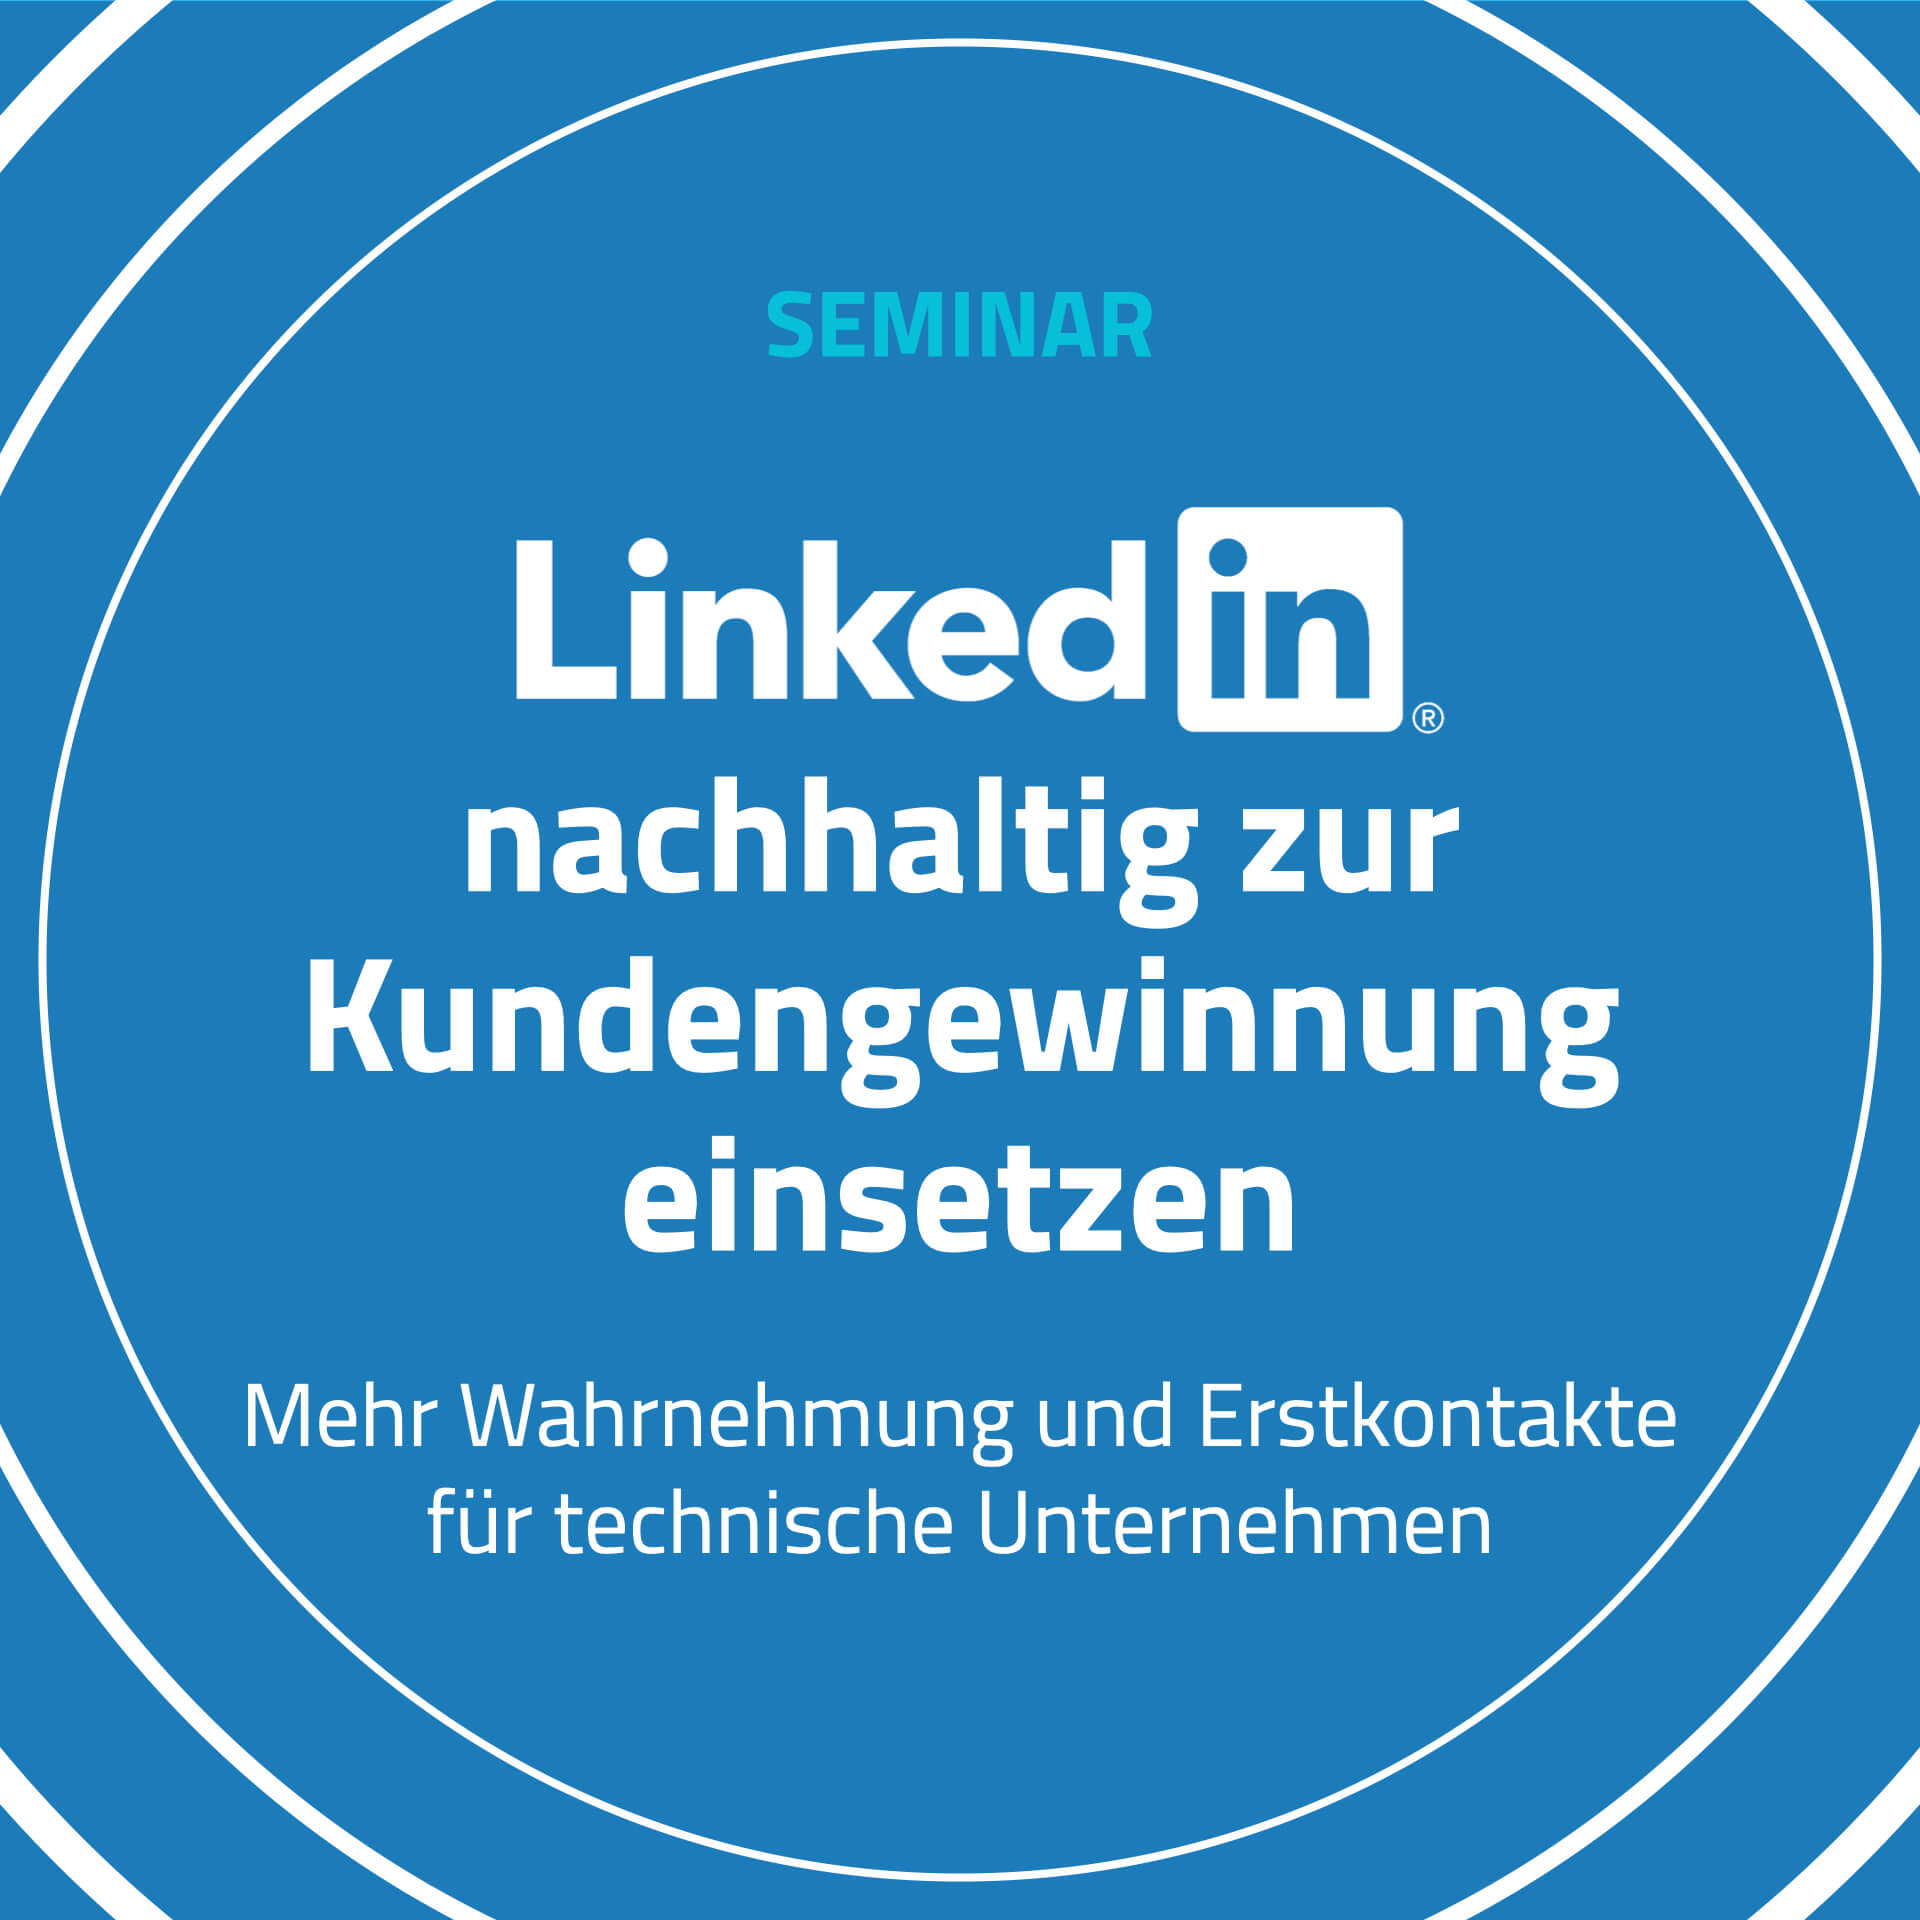 LinkedIn Seminar von WACHSTUMSPLAN GmbH für mehr Wahrnehmung und Erstkontakte für technische Unternehmen und technischer Vertrieb